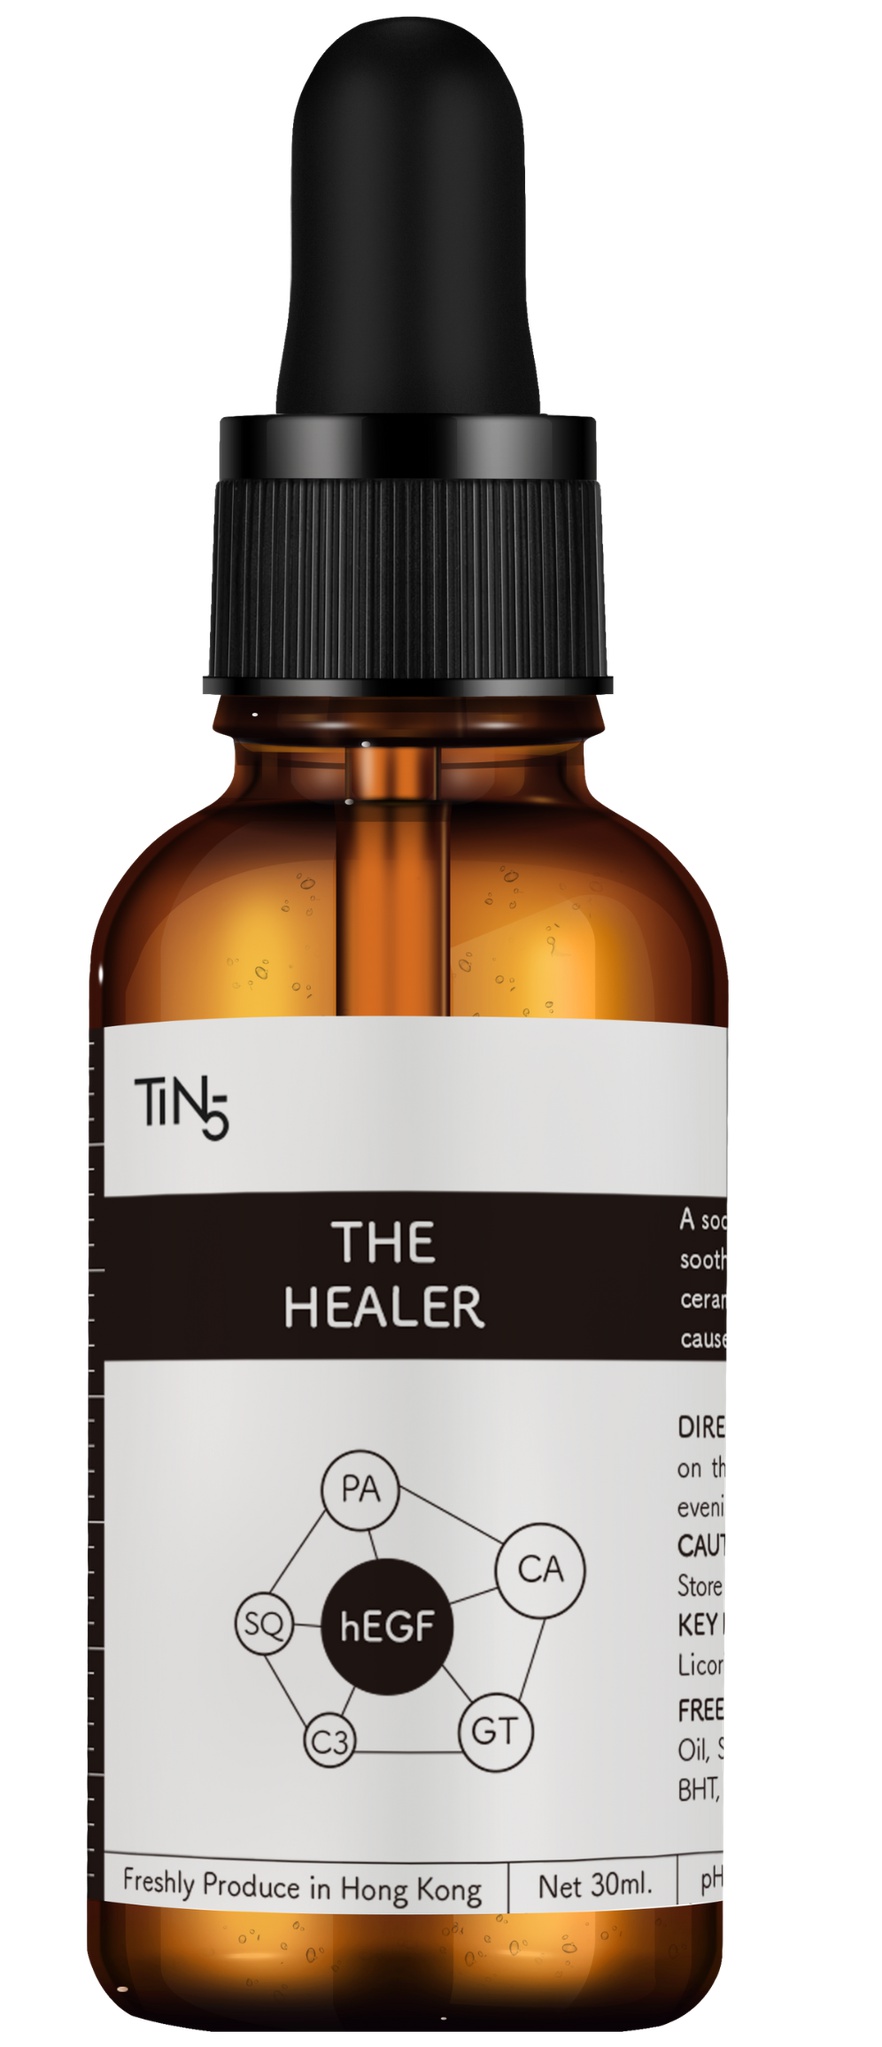 TiN5 The Healer